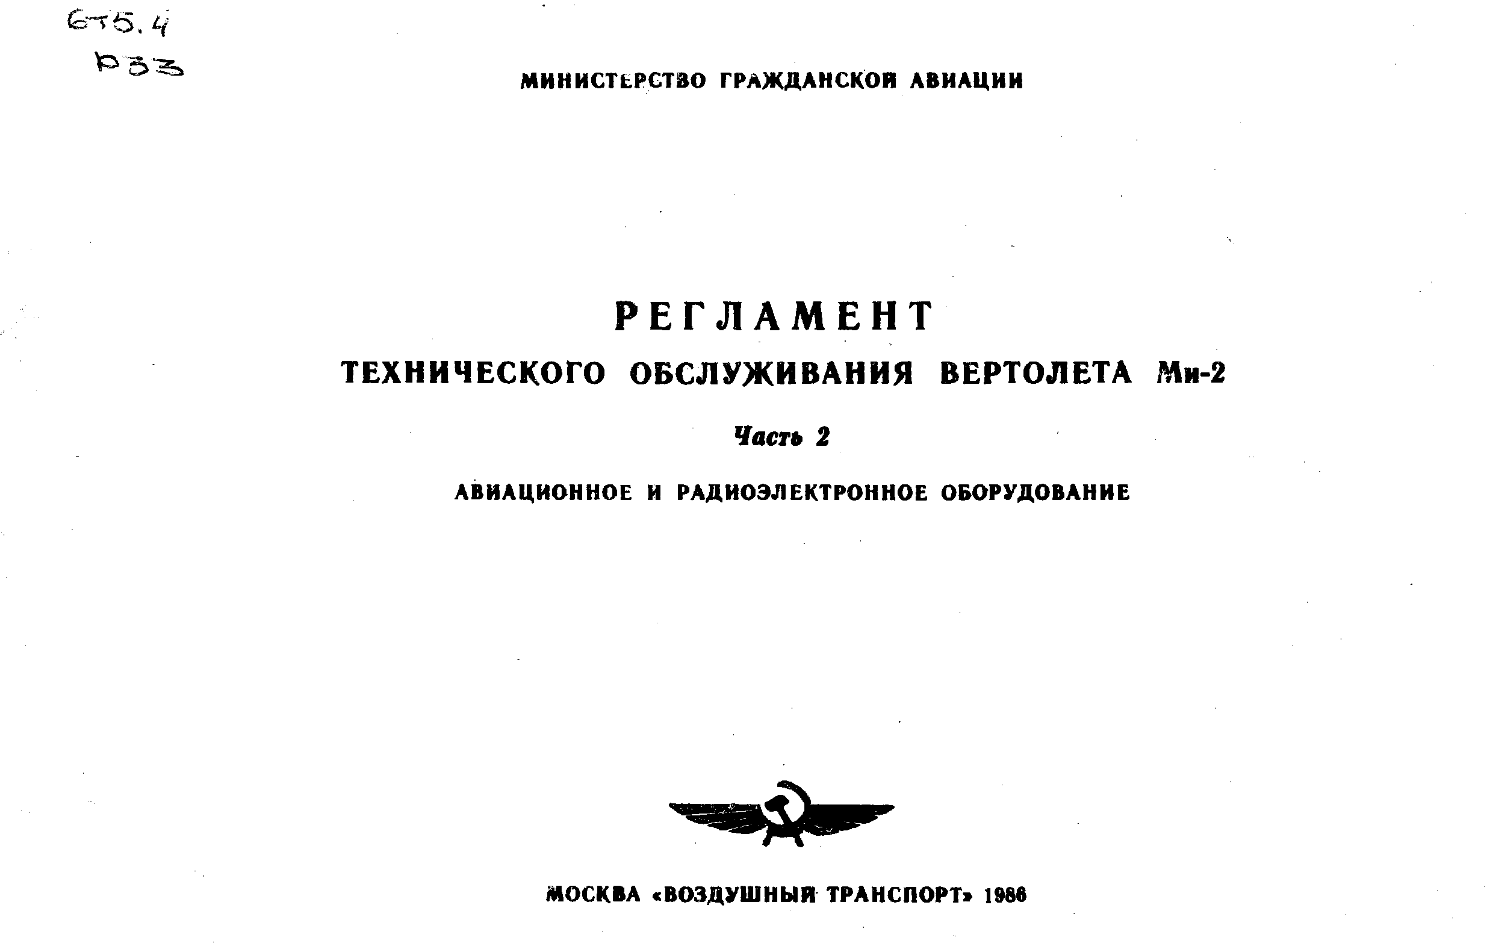 Ми-2. Регламент технического обслуживания вертолета МИ-2. Часть 2. Авиационное и радиоэлектронное оборудование. 1986